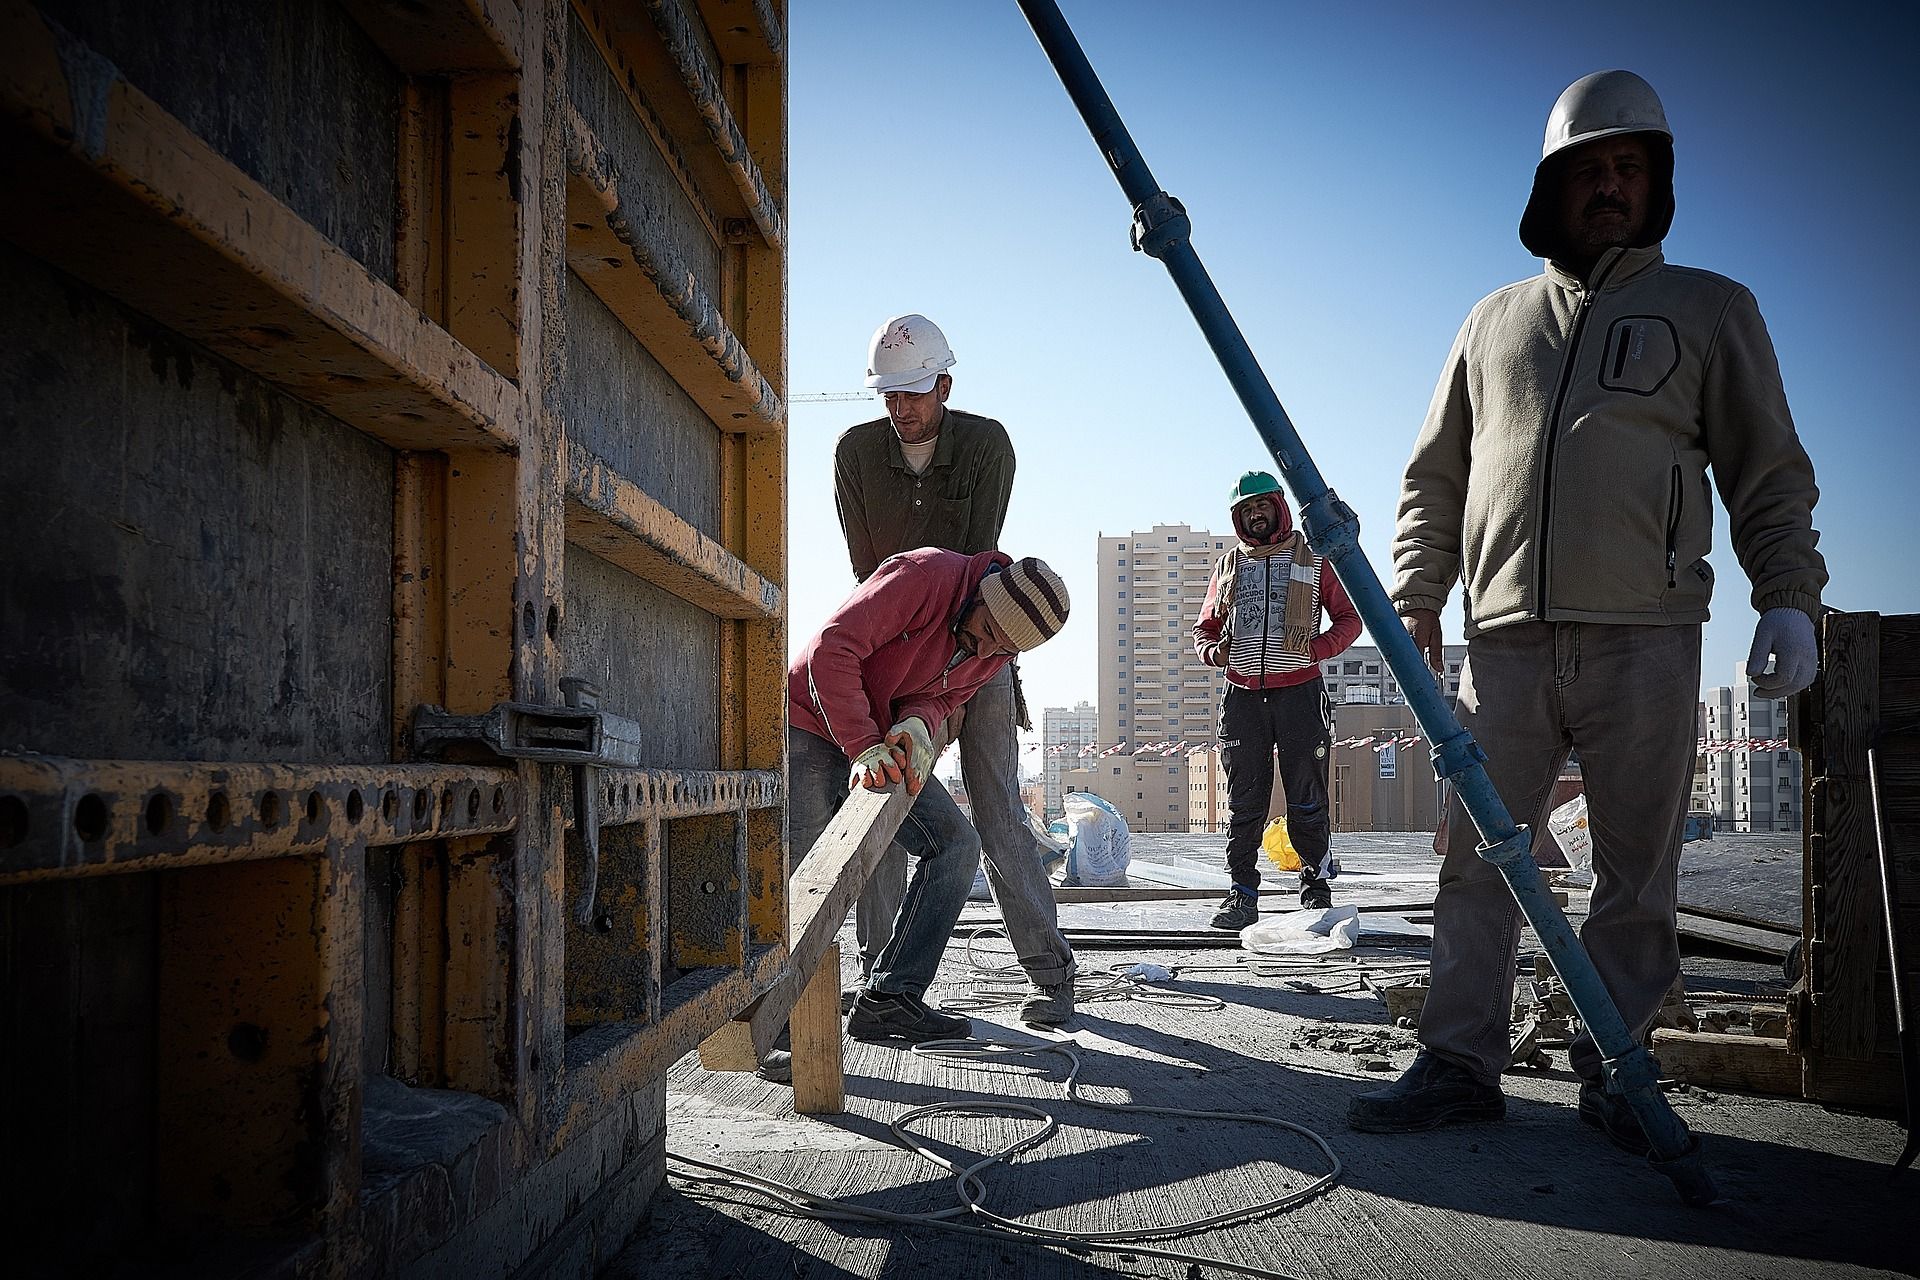 des hommes sur un chantier de construction - Image par Mowtiti de https://pixabay.com/fr/photos/hommes-ouvriers-construction-5703216/